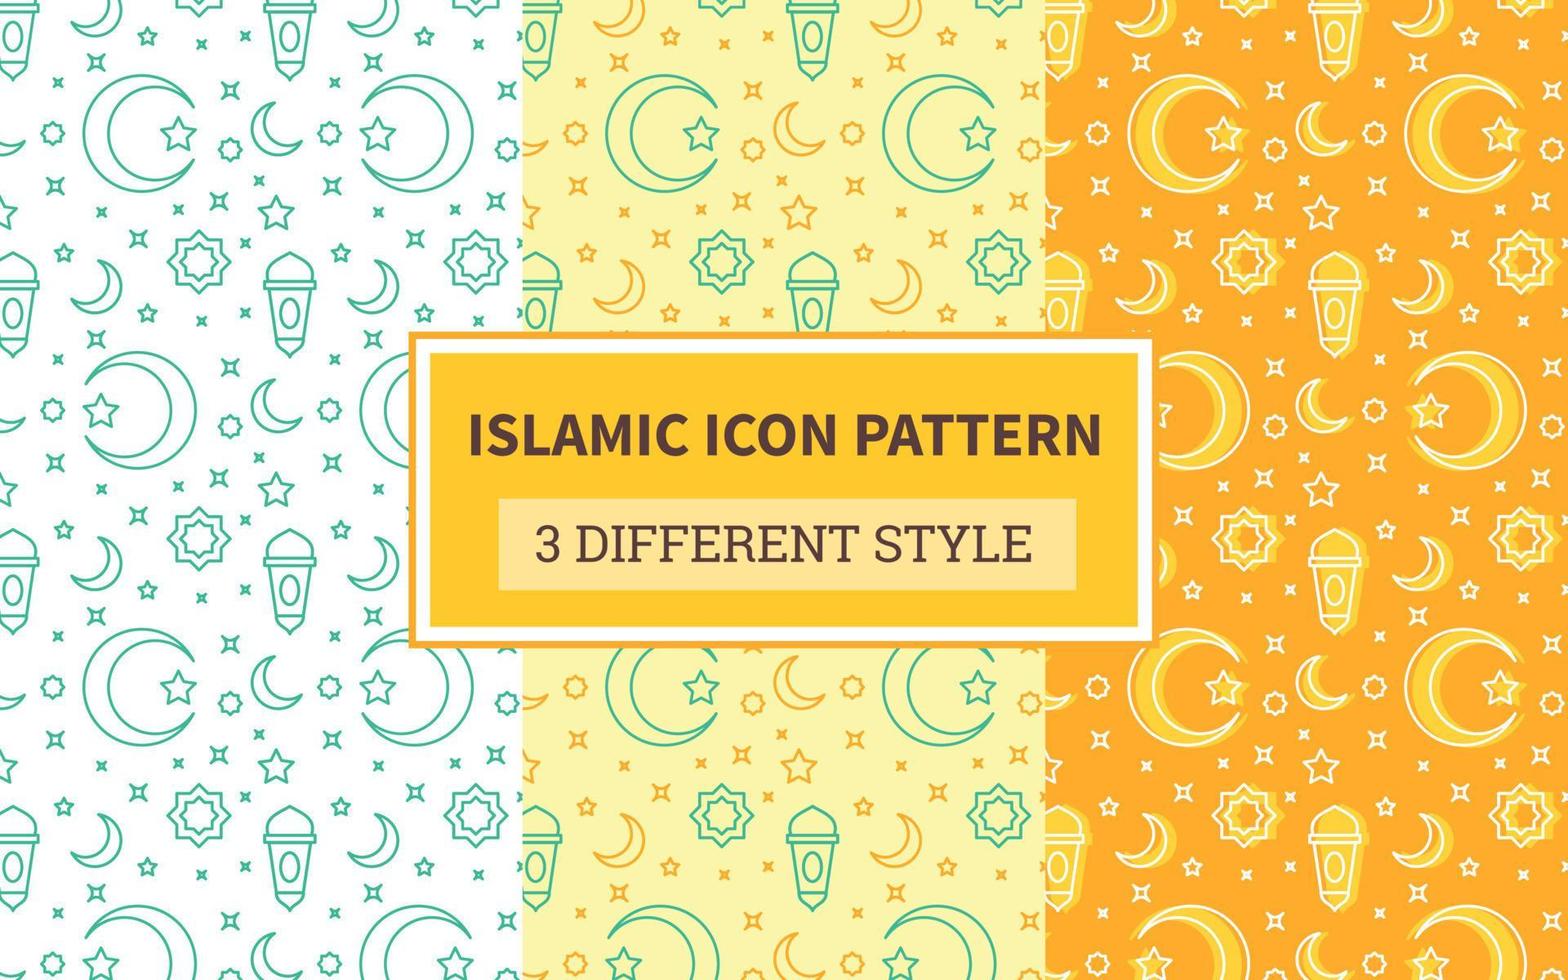 patrón de icono islámico linterna luna creciente estrella de adorno con versión de paquete tres diseño plano de estilo diferente vector